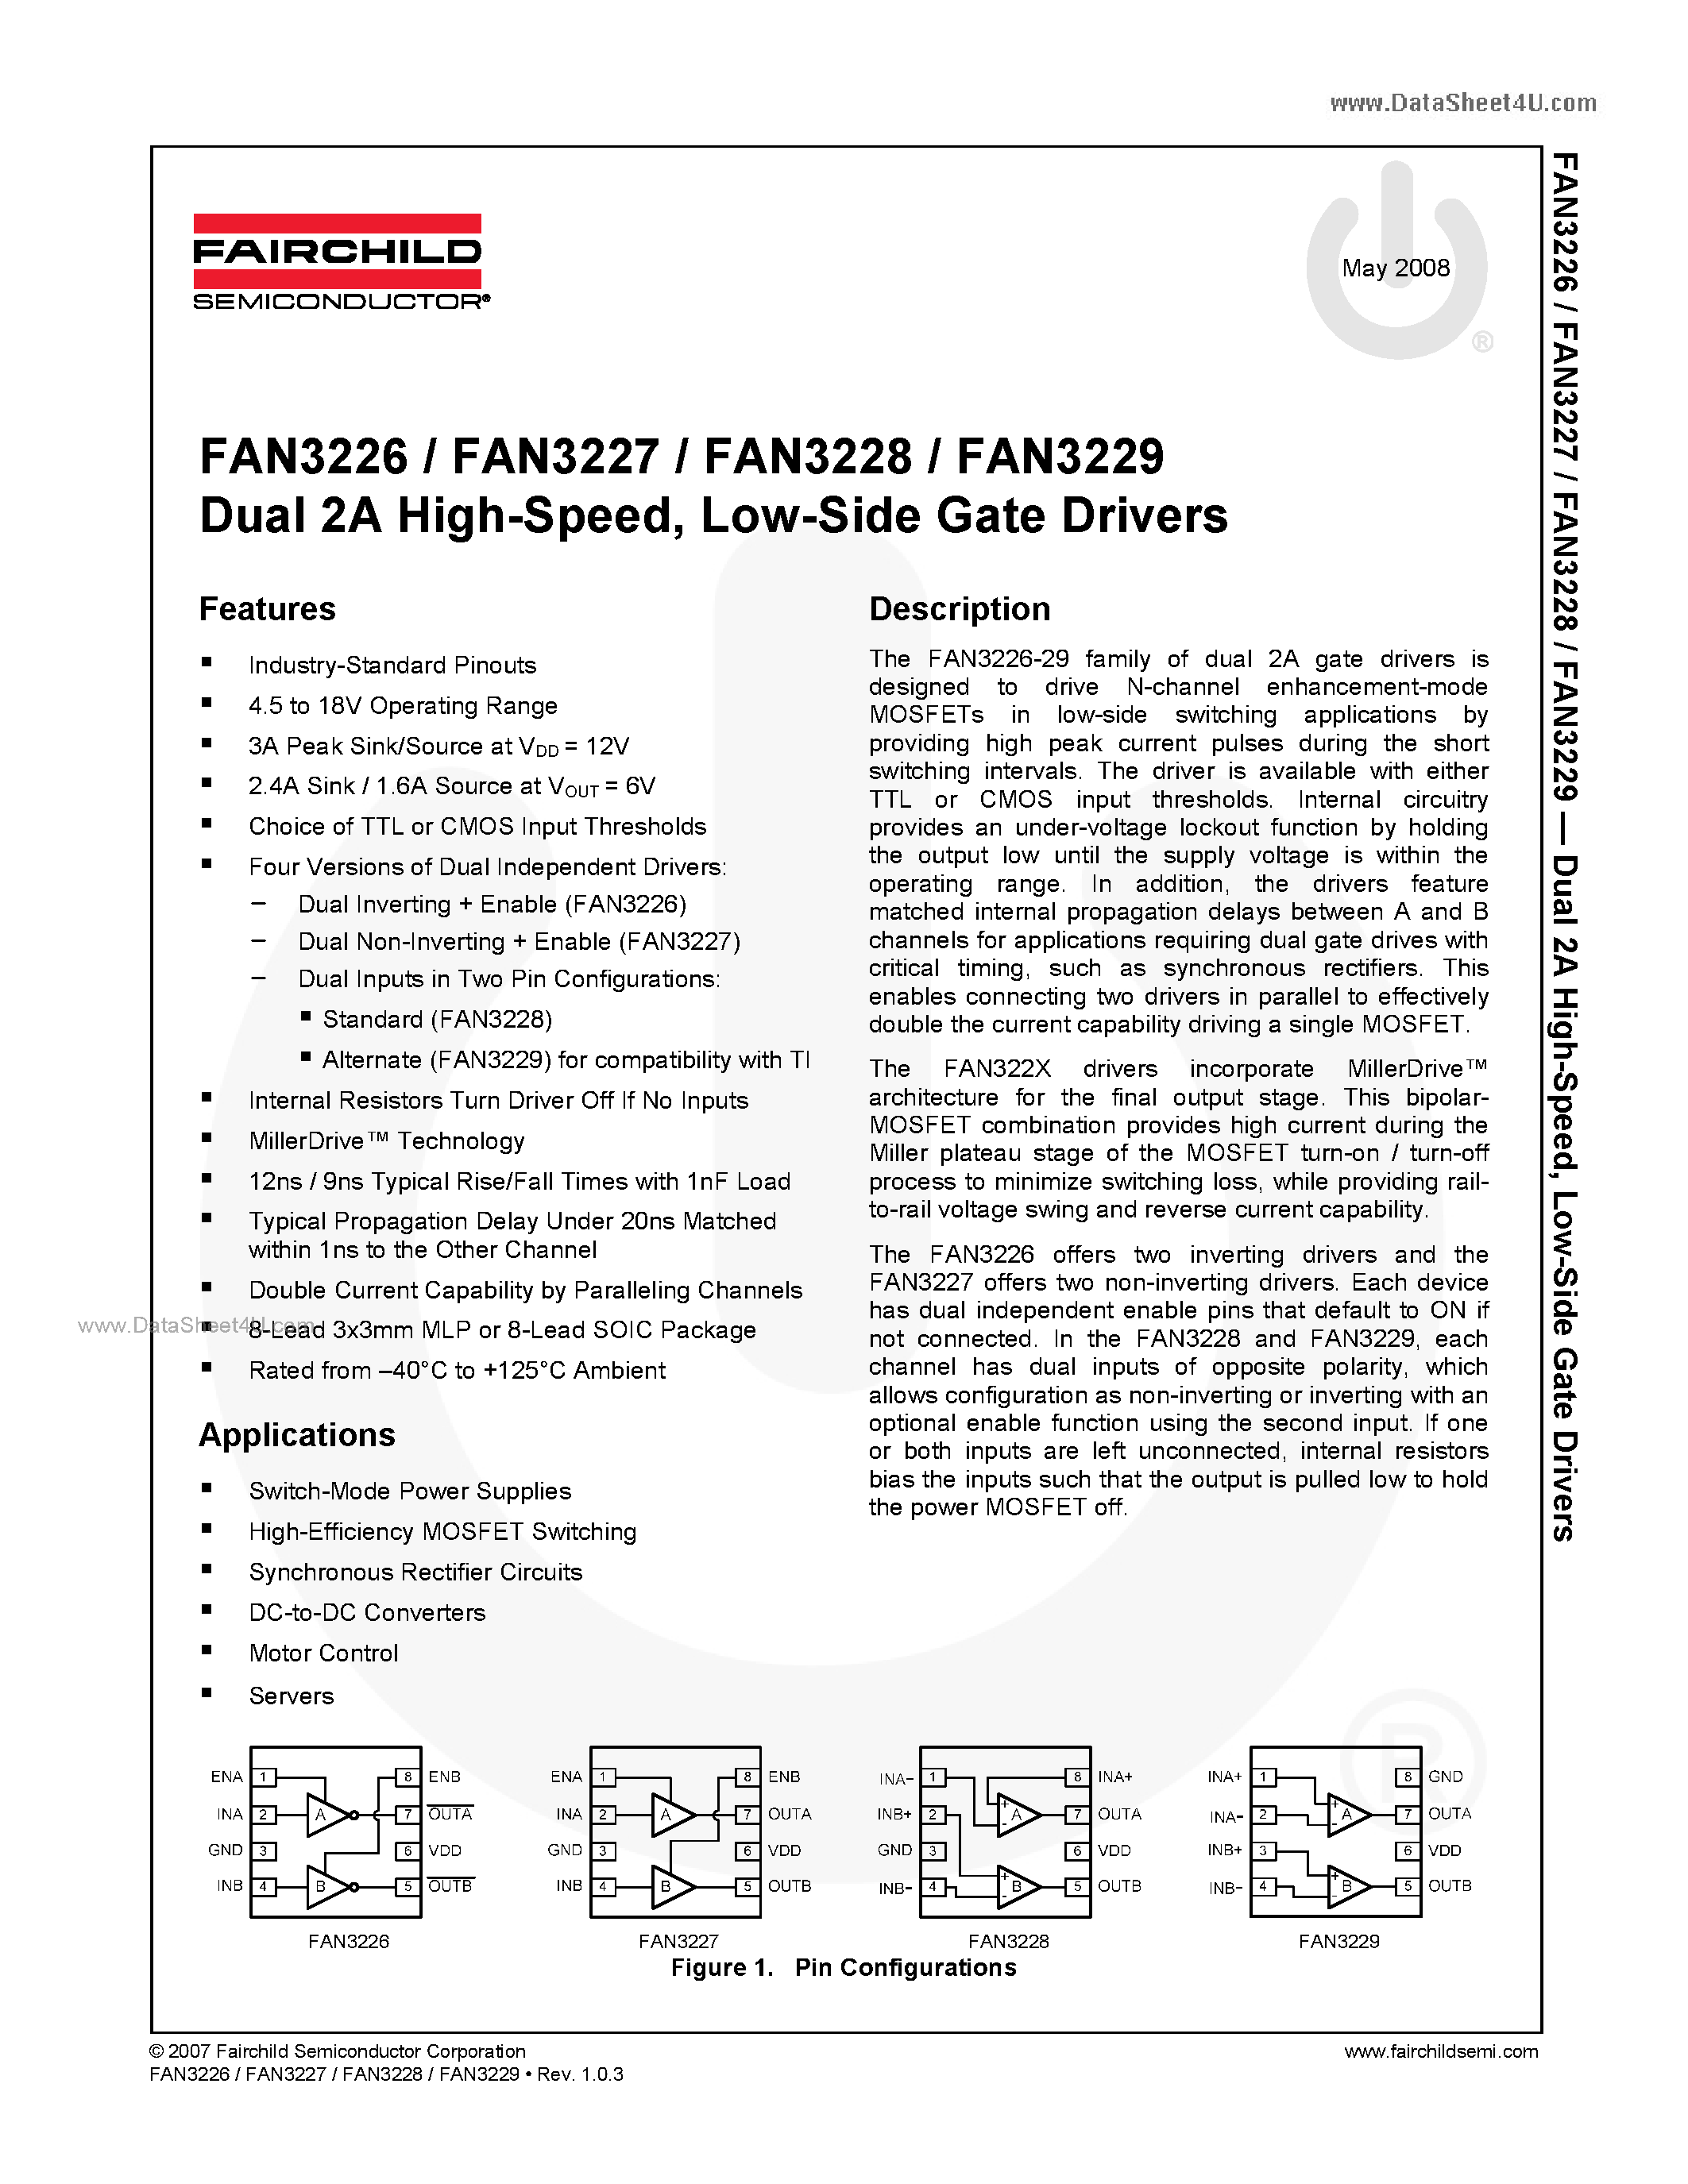 Datasheet FAN3226 - (FAN3226 - FAN3229) Low-Side Gate Drivers page 1